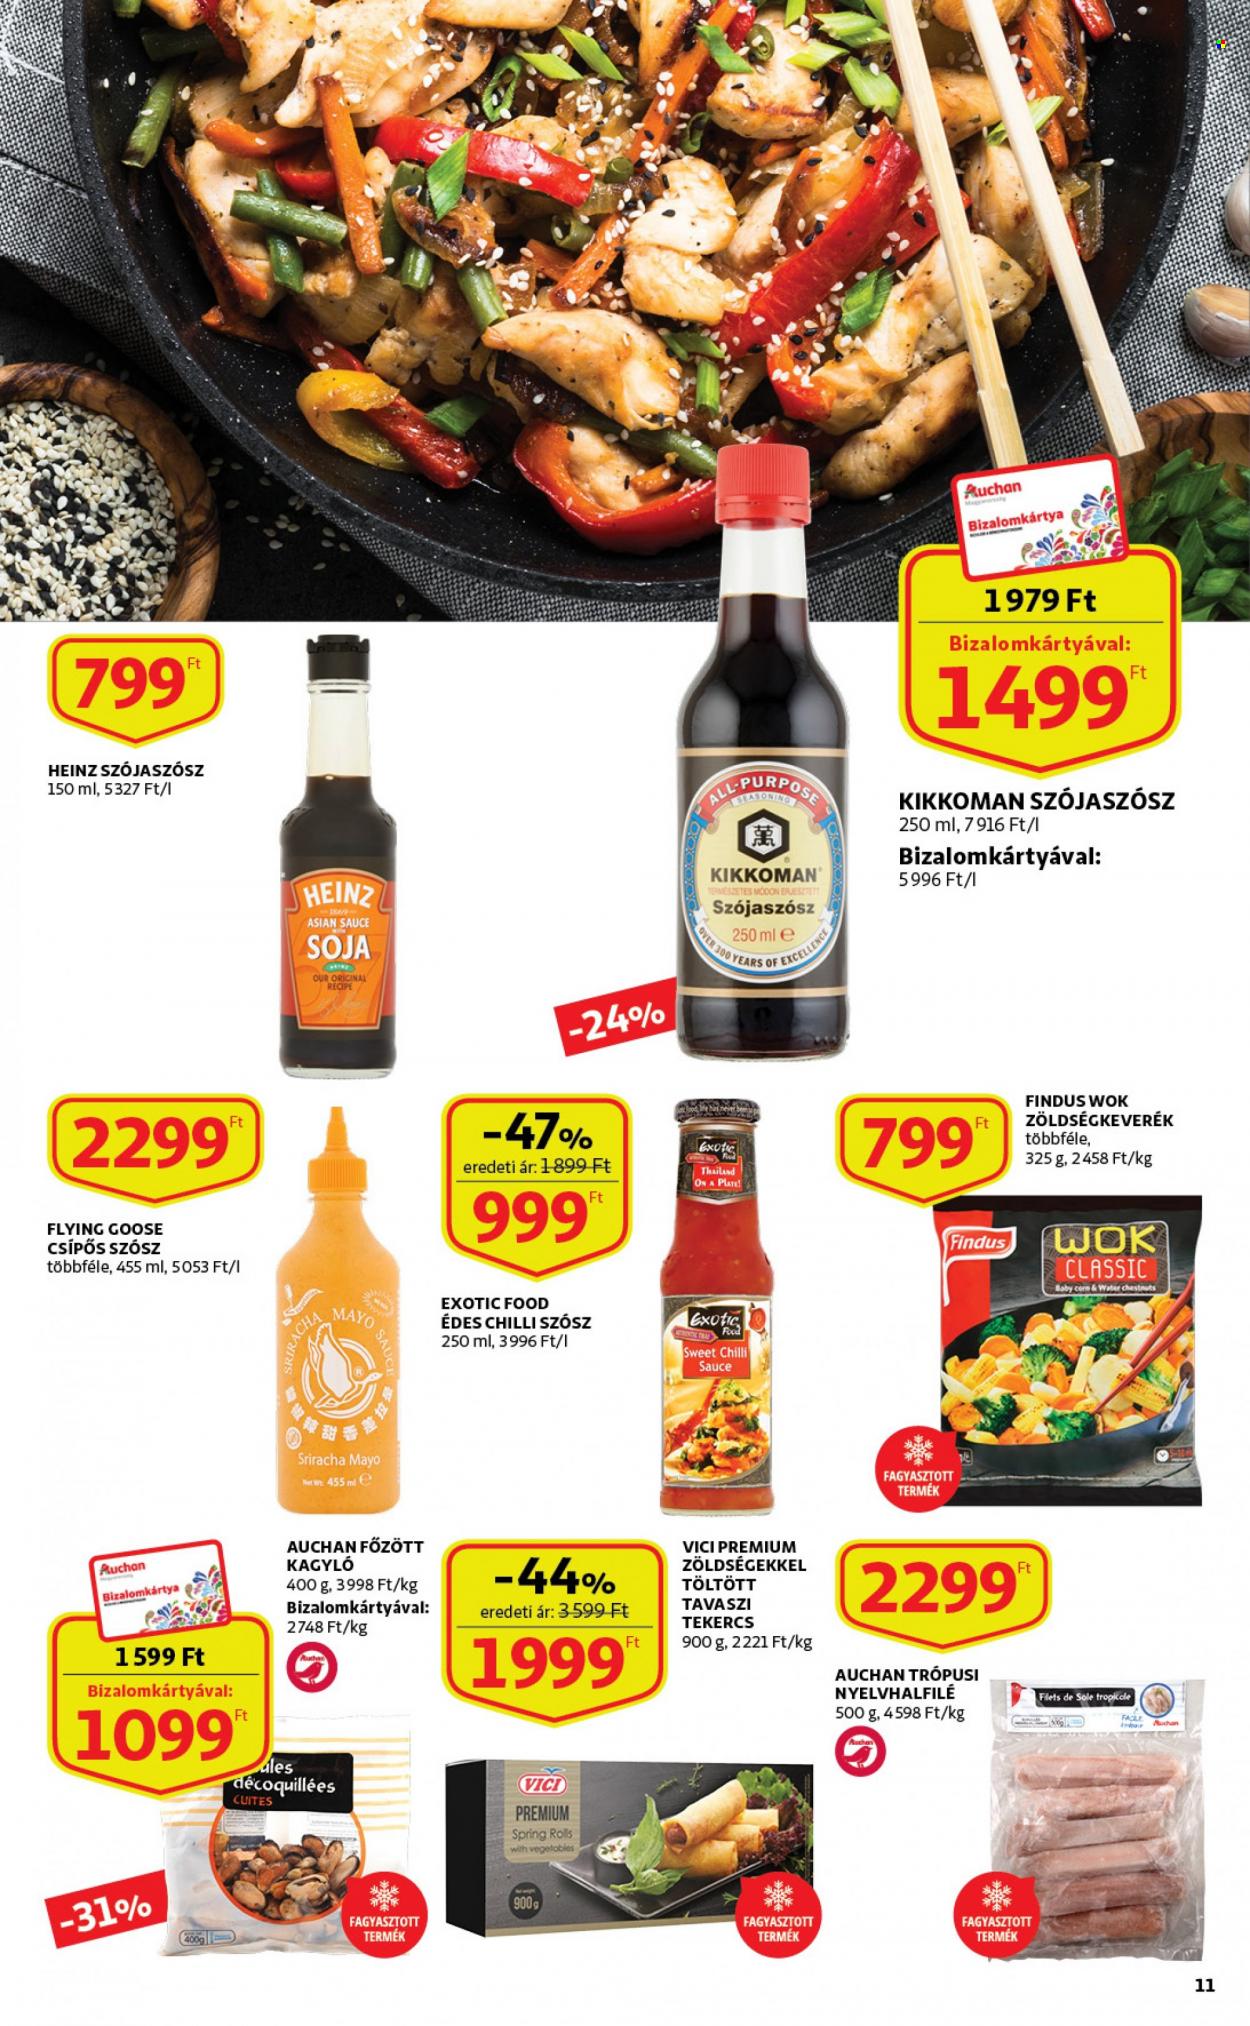 Auchan akciós újsága  - 2023.01.19 - 2023.02.01 - Akciós termékek - kagyló, Heinz, zöldségkeverék, sriracha, szójaszósz, chiliszósz.  11. Oldal